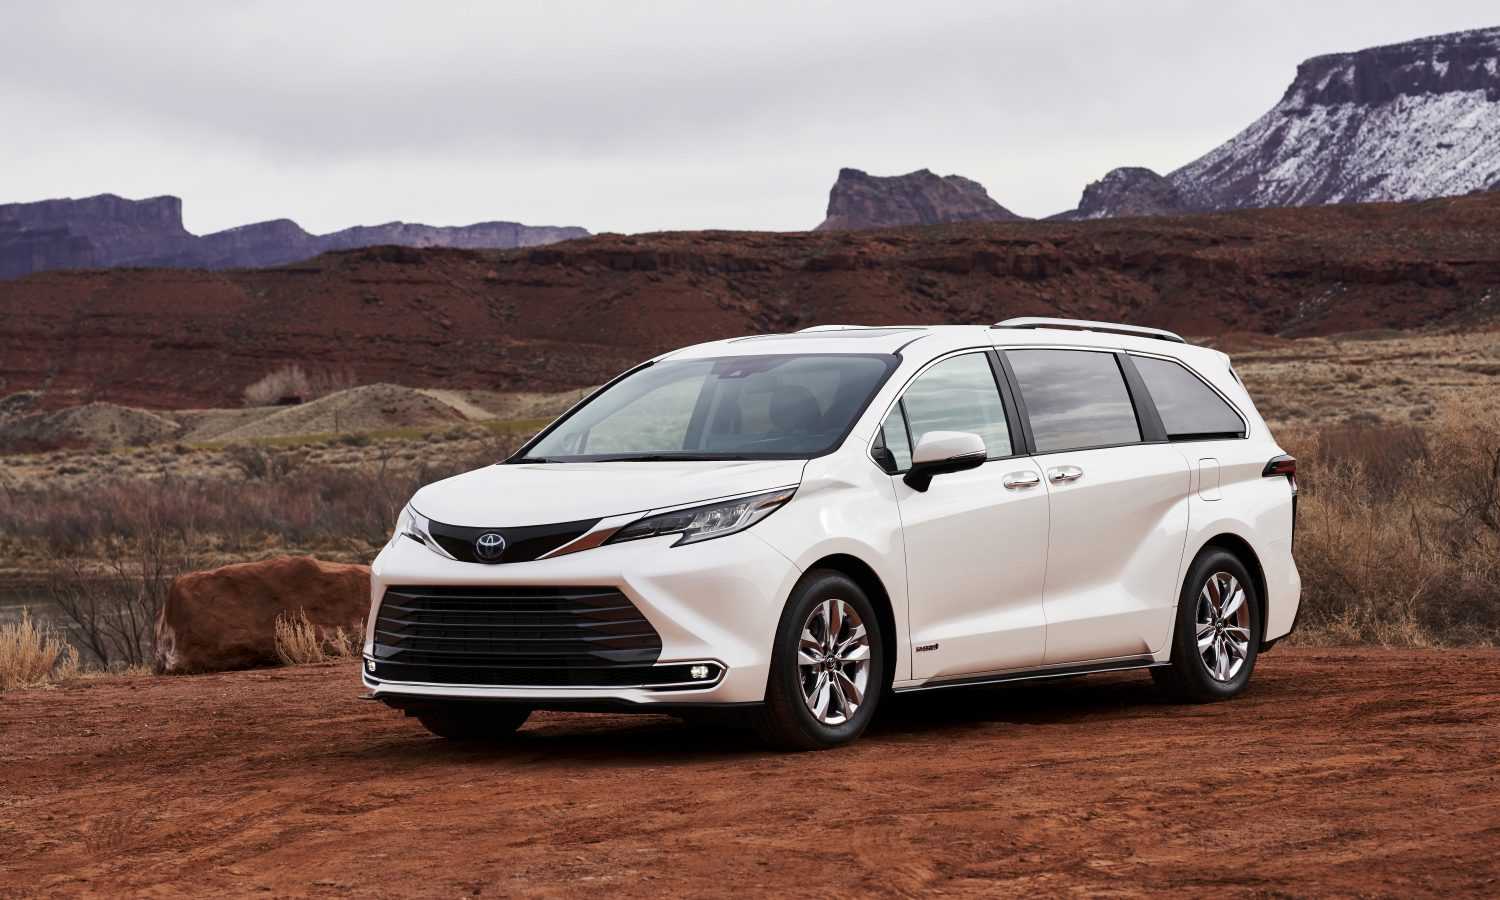 Toyota Venza второго поколения старт продаж характеристики обзор двигатель и трансмиссия экстерьер и интерьер комплектации и цены